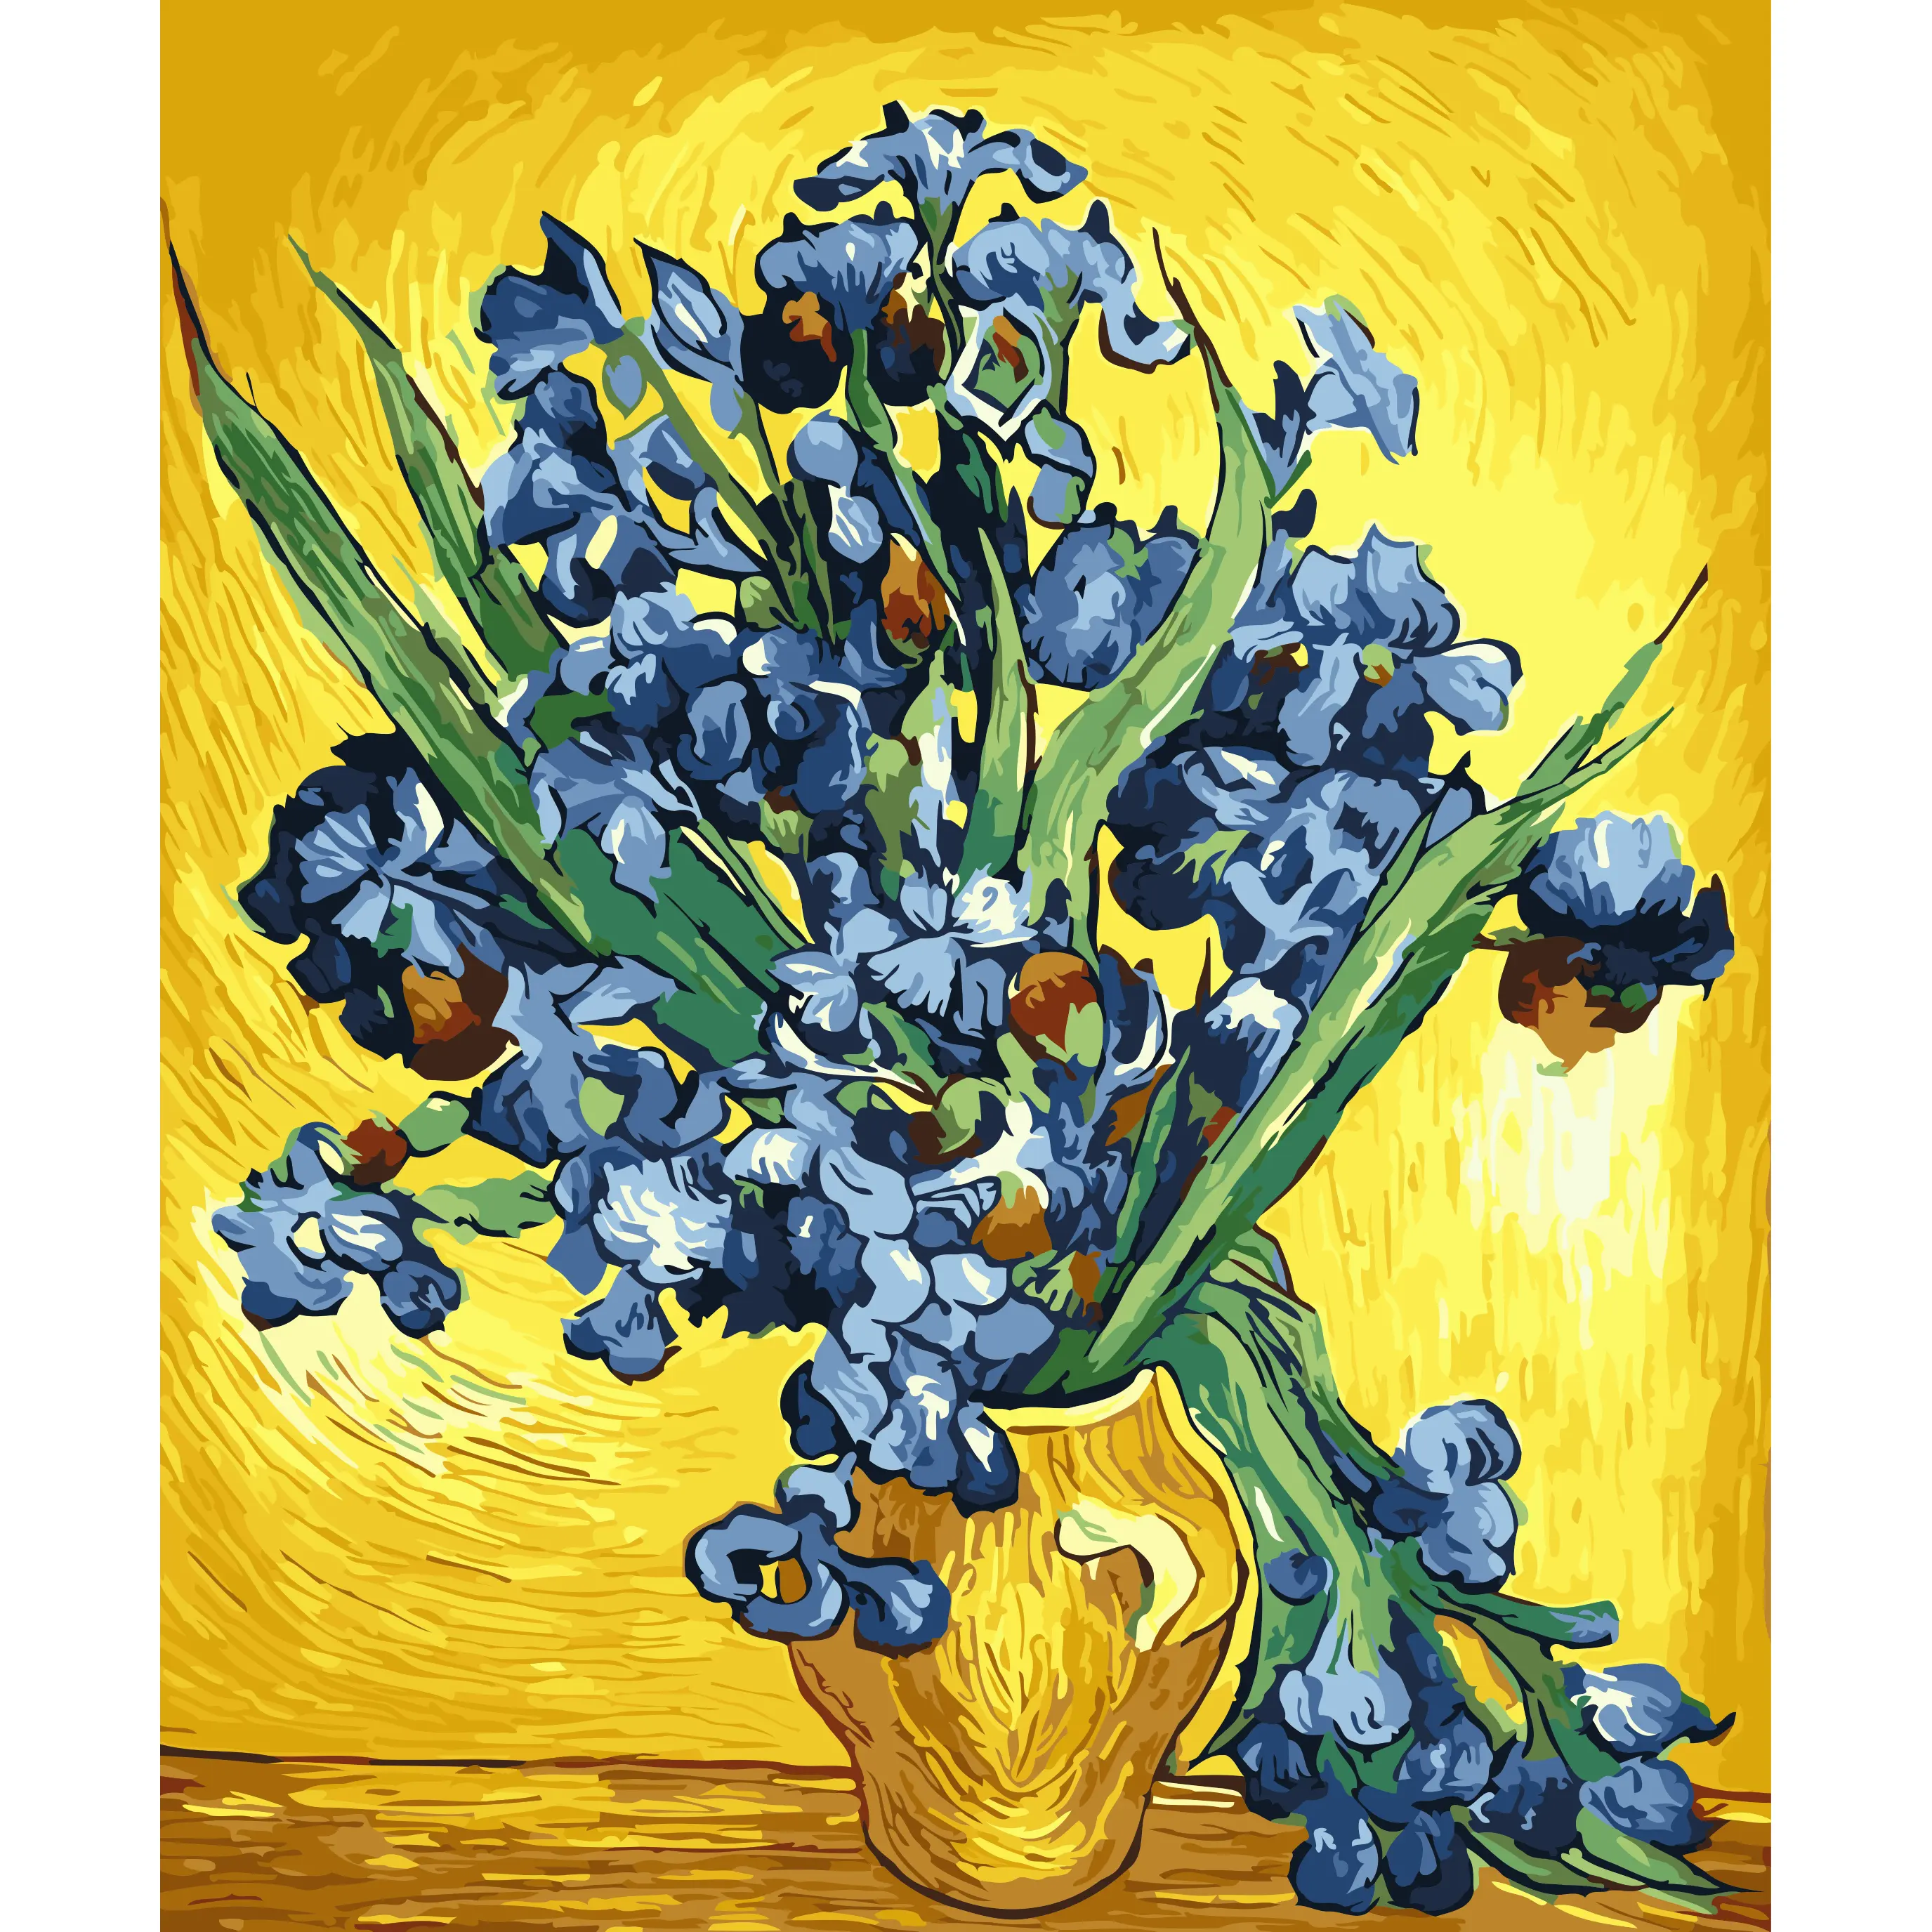 Pintura DIY por números flores pintadas a mano decoración del hogar regalo lienzo dibujo figura pintura al óleo 16x20"